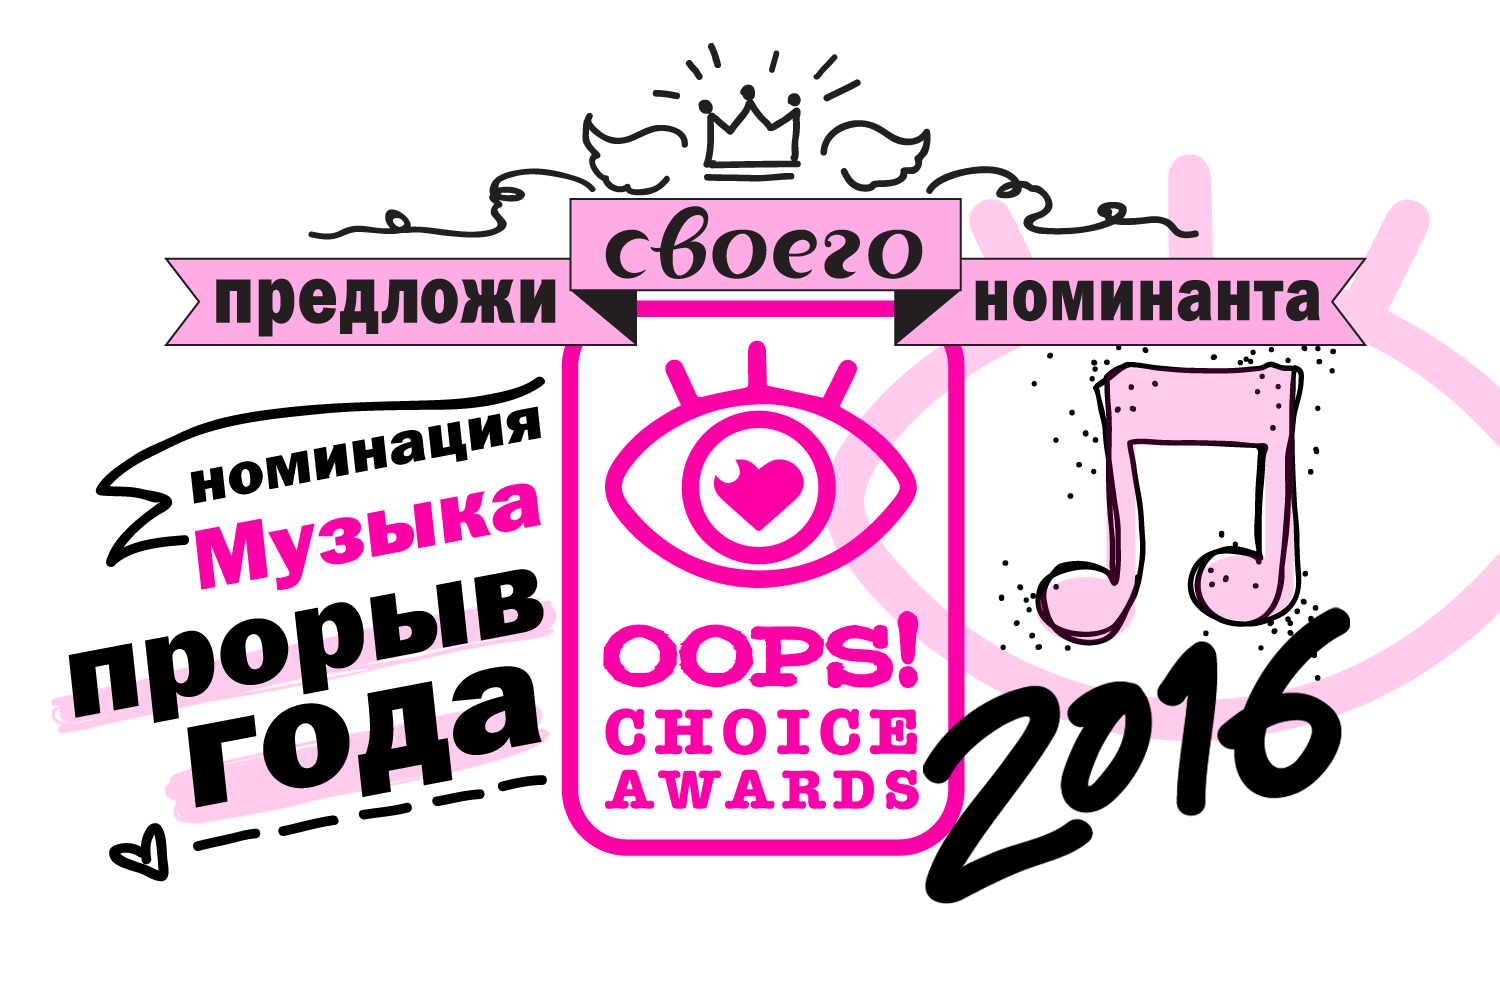 OOPS! Choice Awards: кого ты считаешь «Прорывом года»?